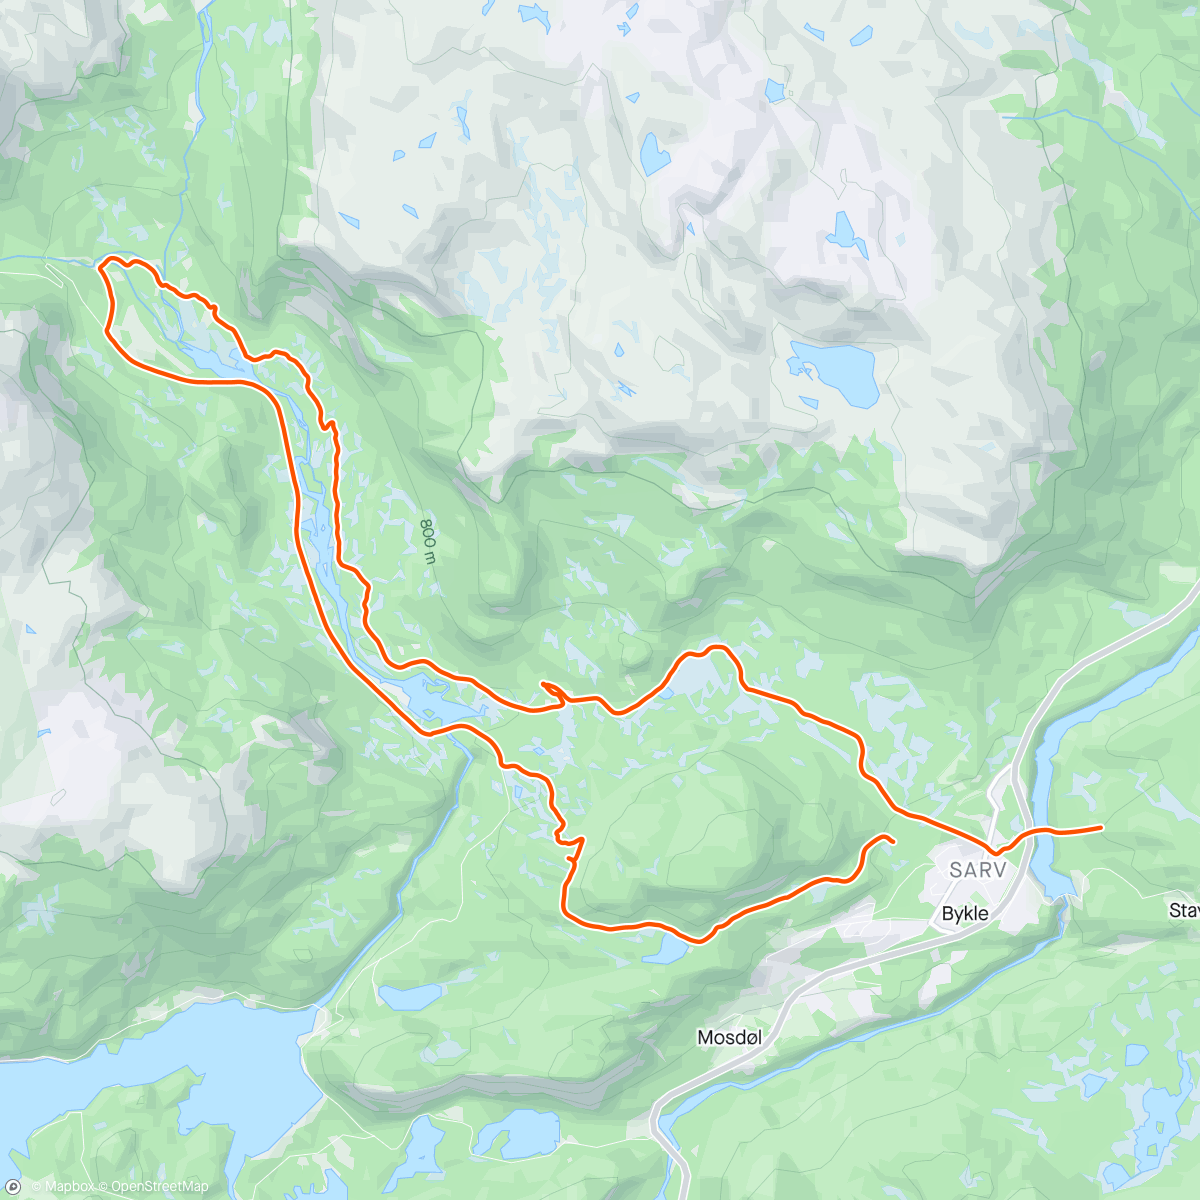 Map of the activity, Løype sjekk med el fatbike👍mulig det skjer noko spennande for syklistene i 2025😎